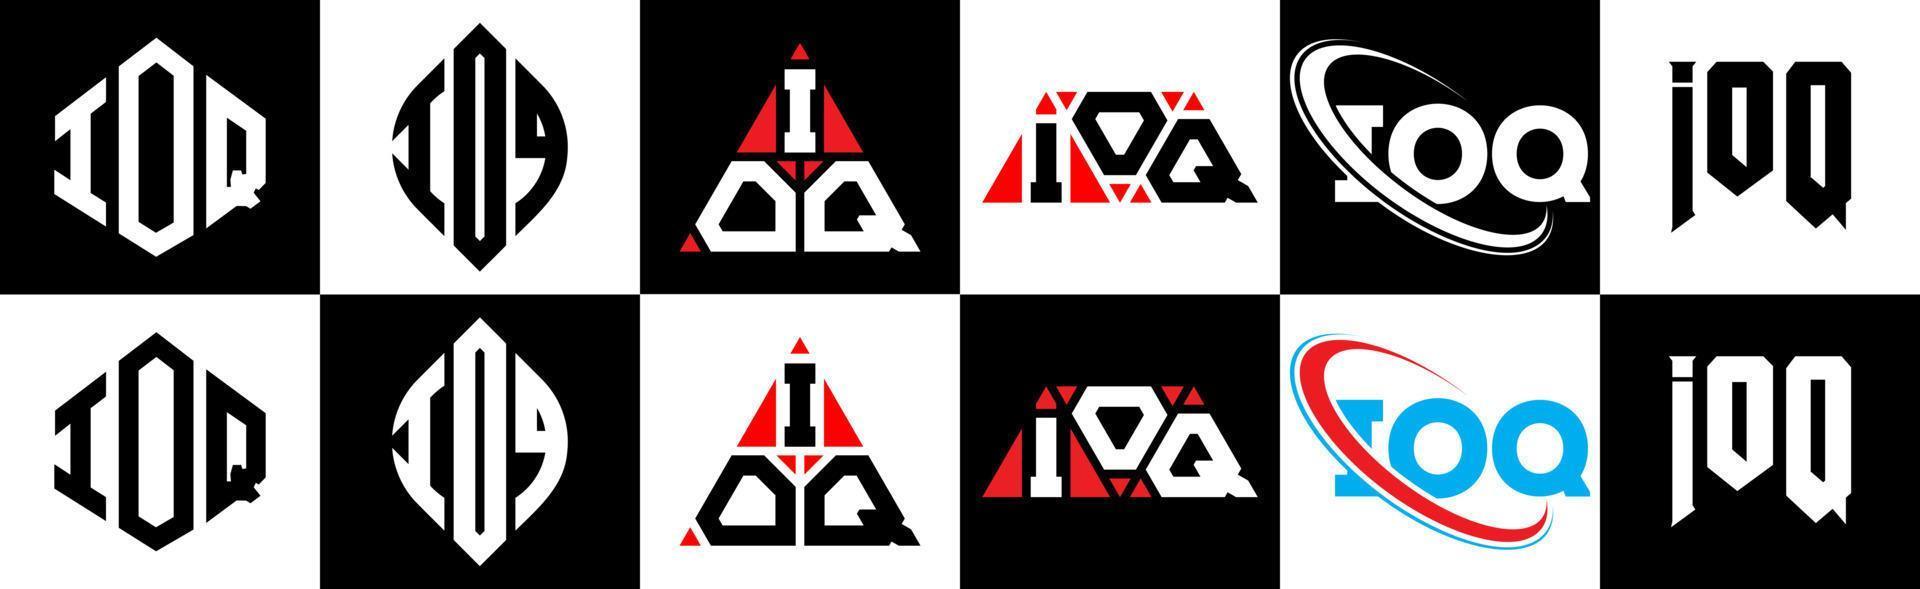 création de logo de lettre ioq en six styles. polygone ioq, cercle, triangle, hexagone, style plat et simple avec logo de lettre de variation de couleur noir et blanc dans un plan de travail. logo minimaliste et classique ioq vecteur